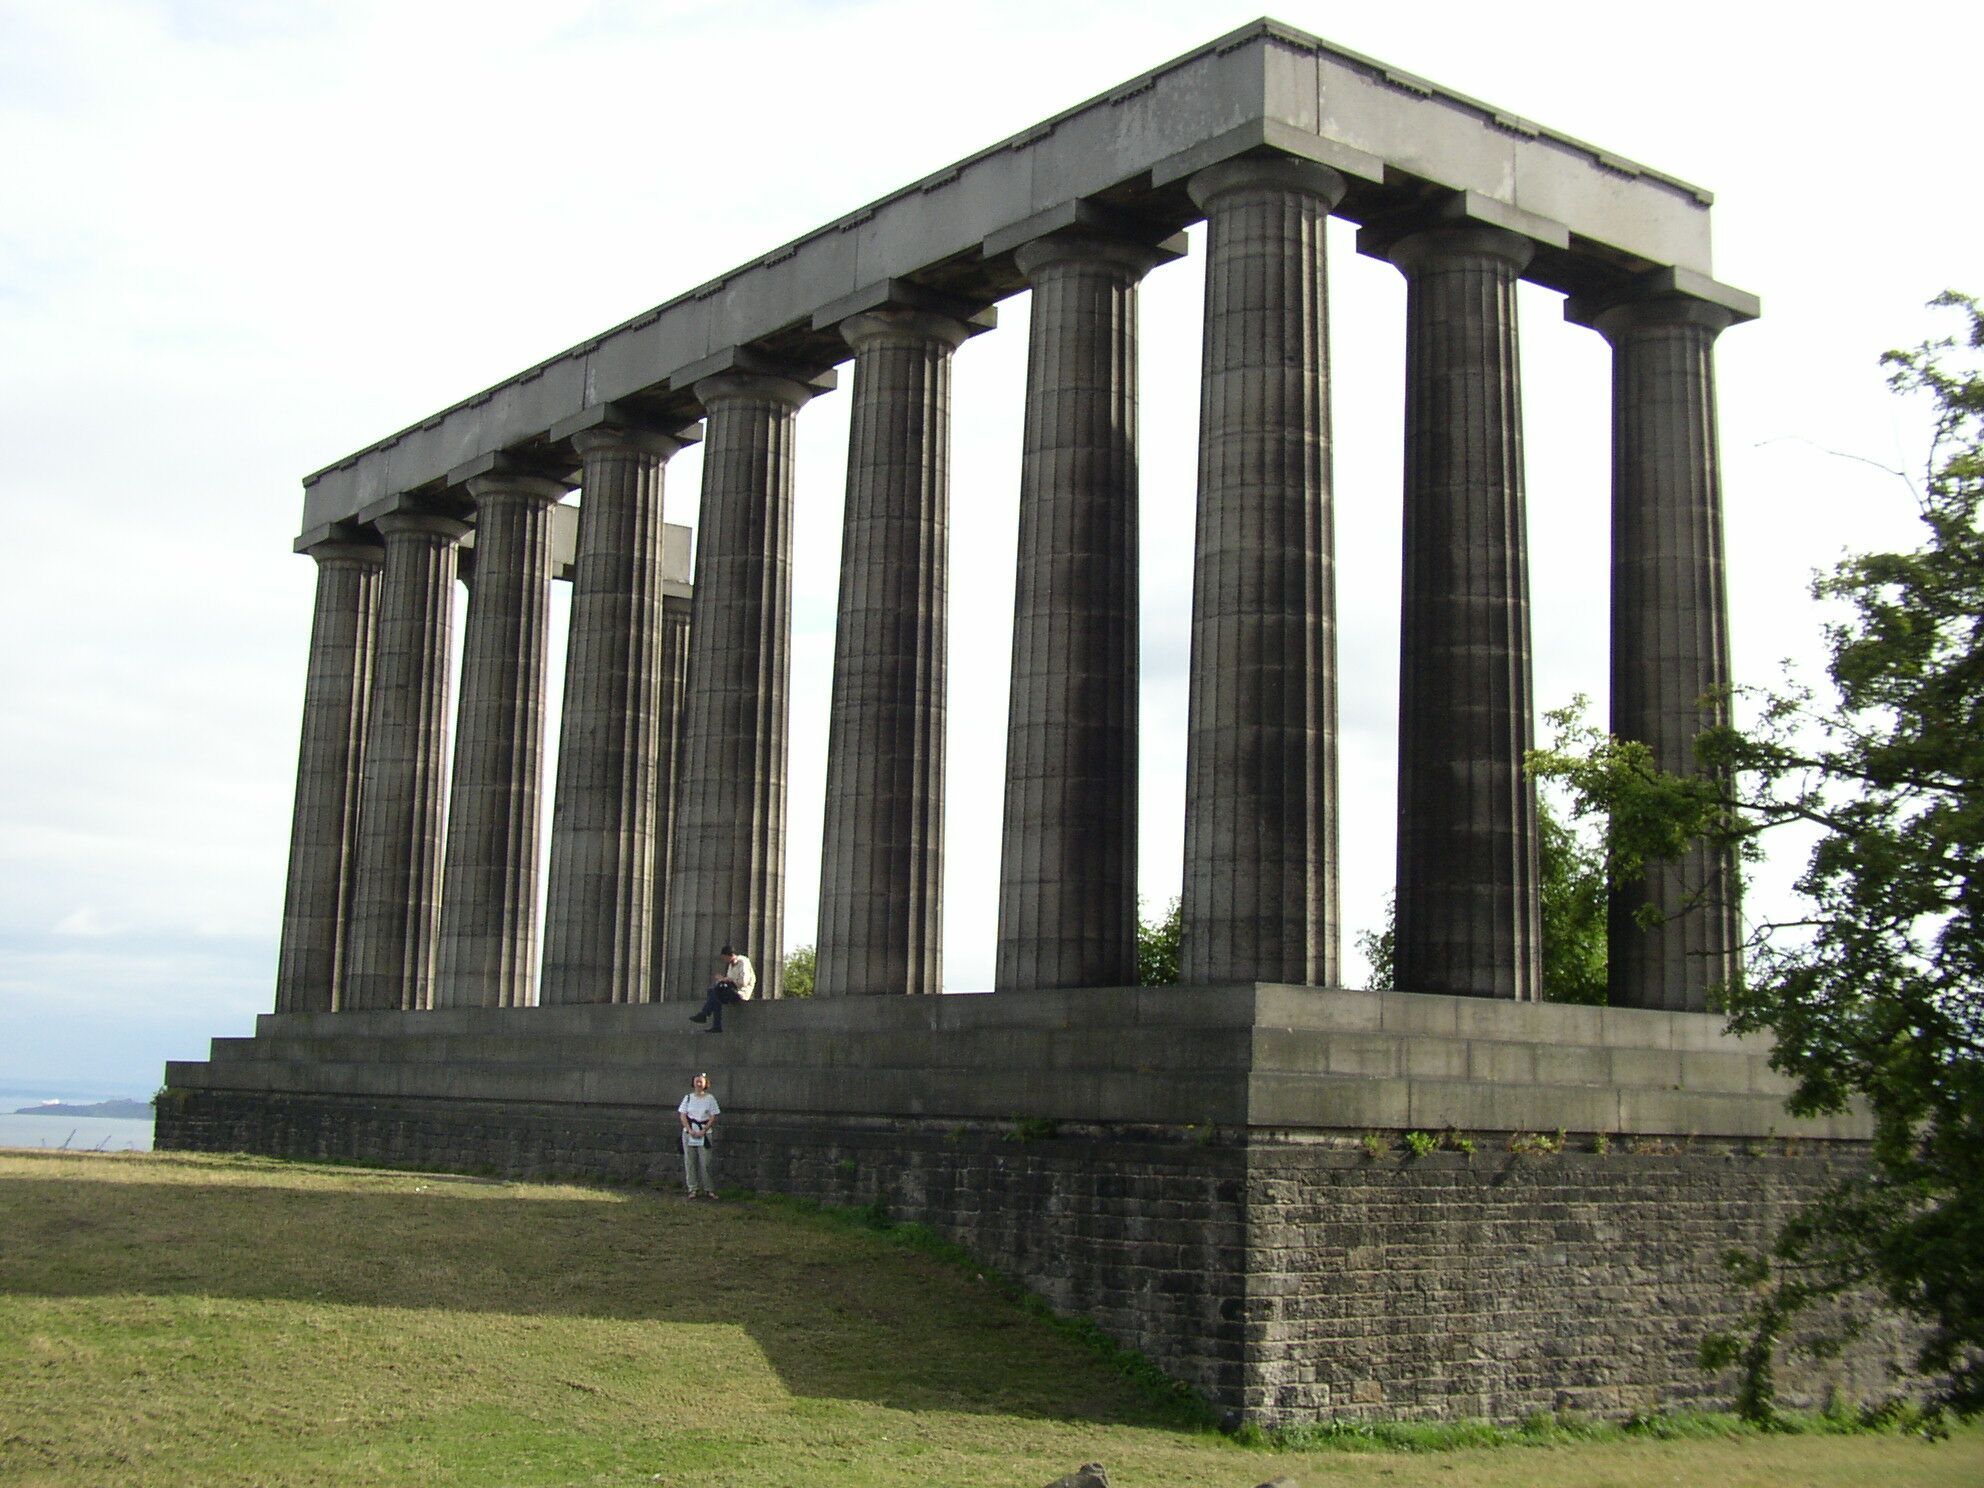 Skotsko
Památník v Edinburghu